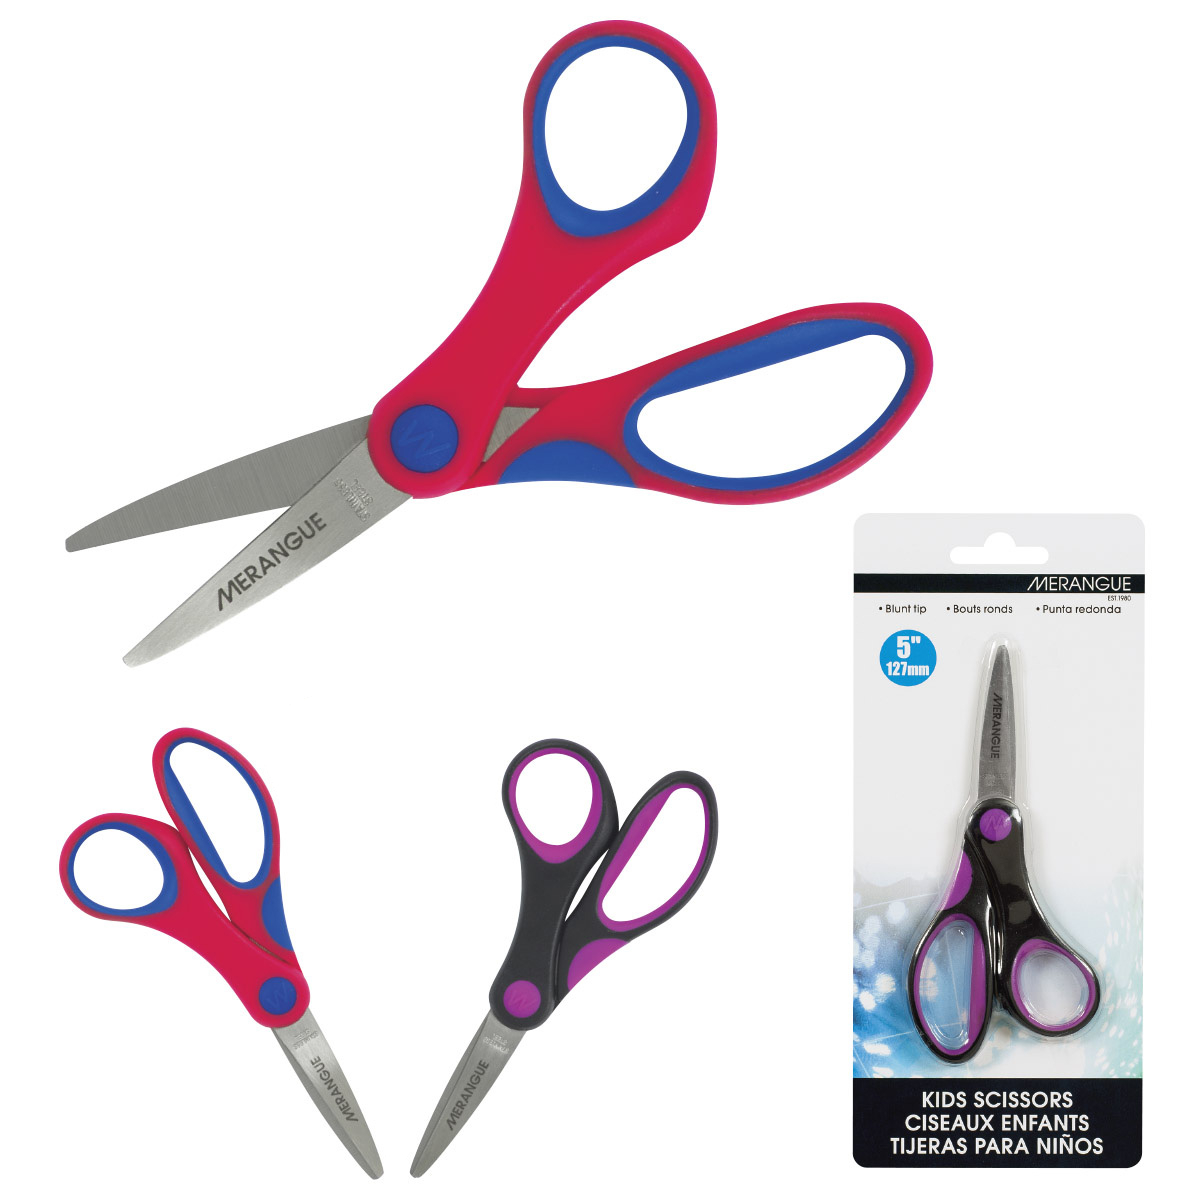 Enday Blunt Tip School Scissors Soft Comfort Grip Handles 5, Blue